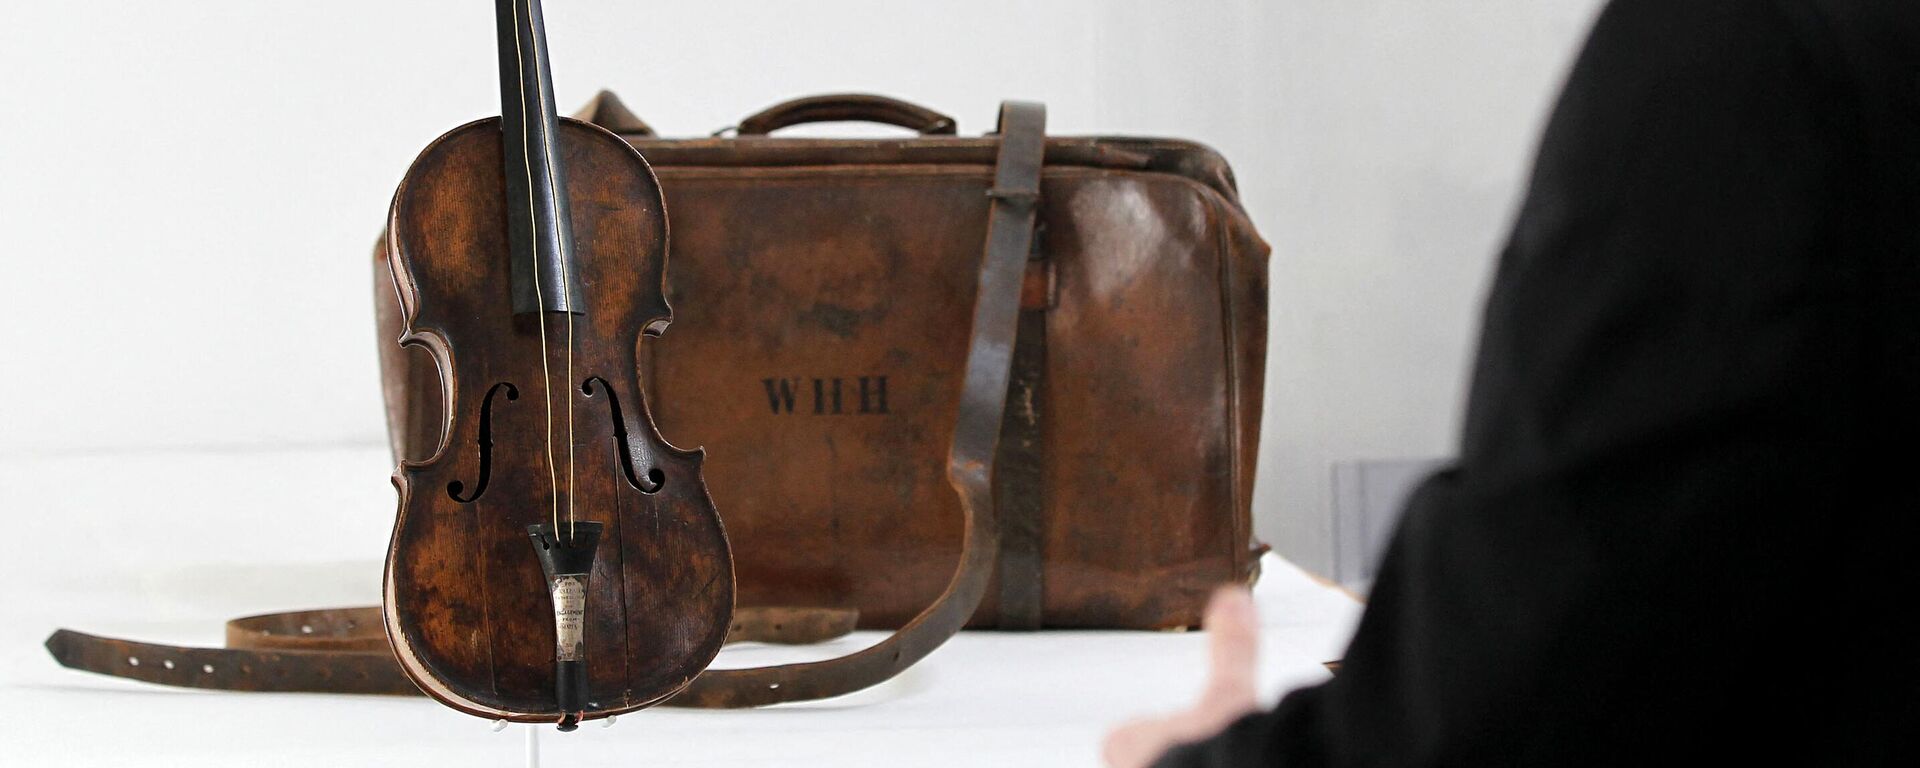 Скрипка, на которой играл дирижер Уоллес Хартли в последние минуты перед затоплением Титаника в Лургане, Ирландия - Sputnik Молдова, 1920, 15.04.2022